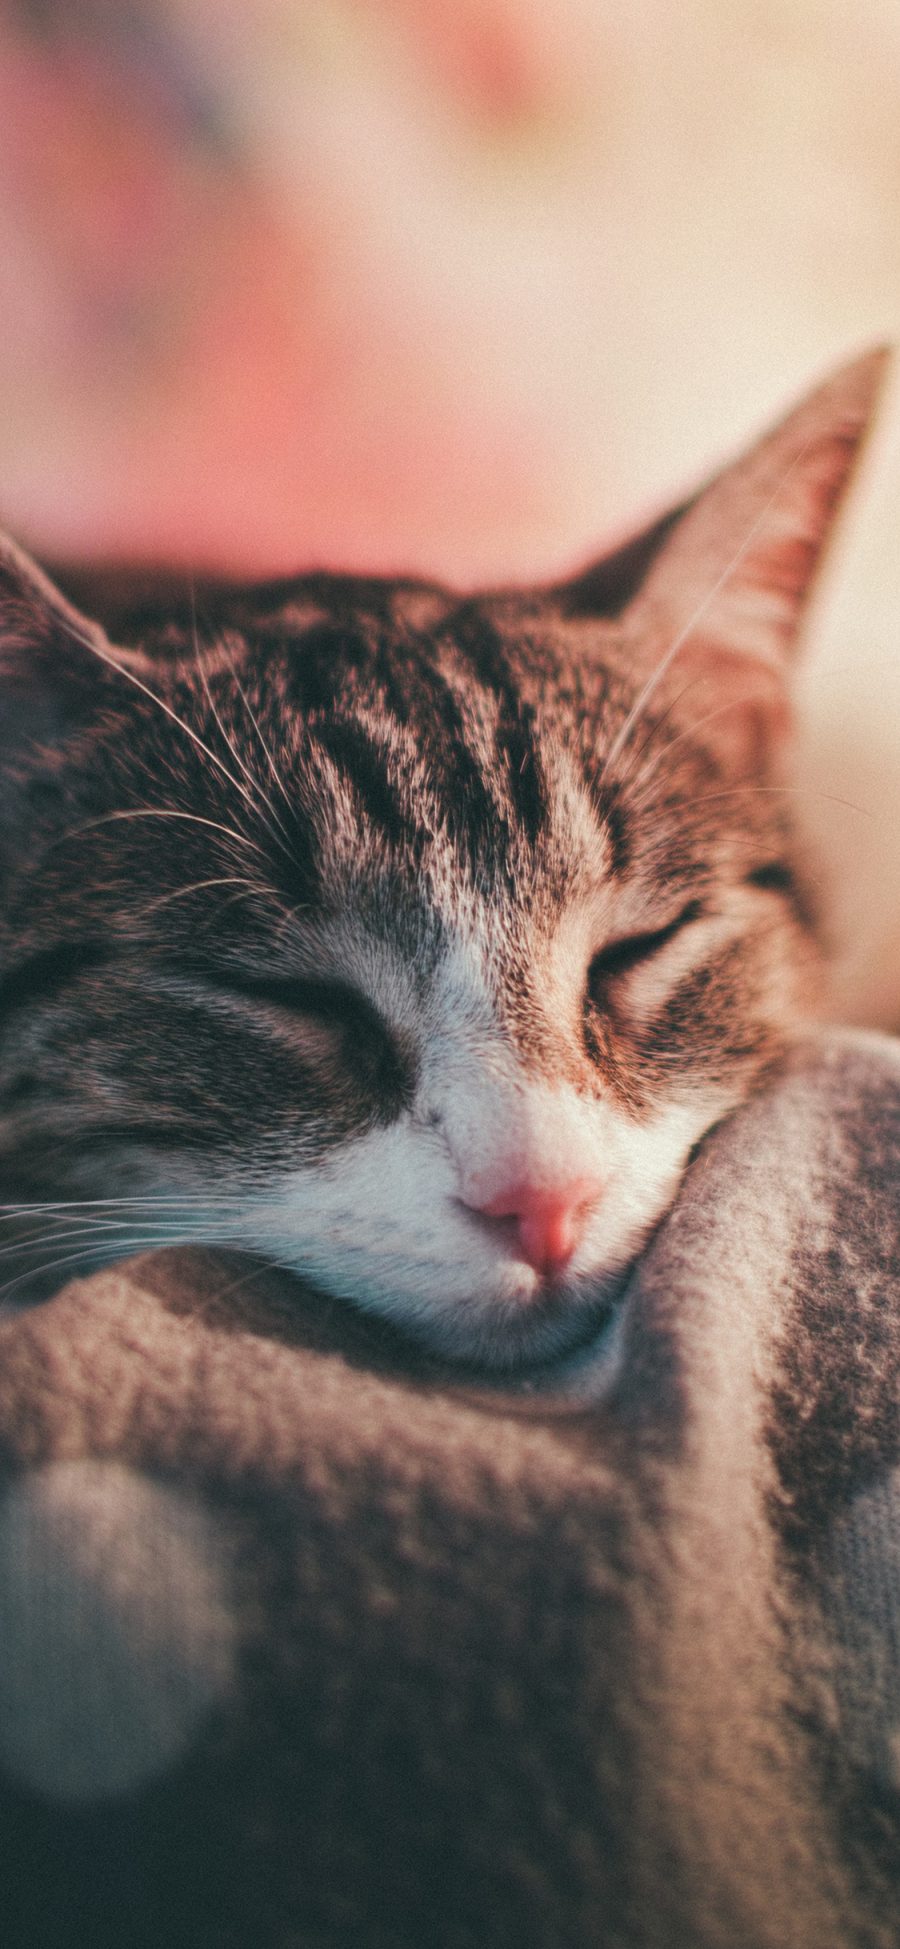 [2436×1125]宠物 猫咪 眯眼 睡眠 苹果手机壁纸图片